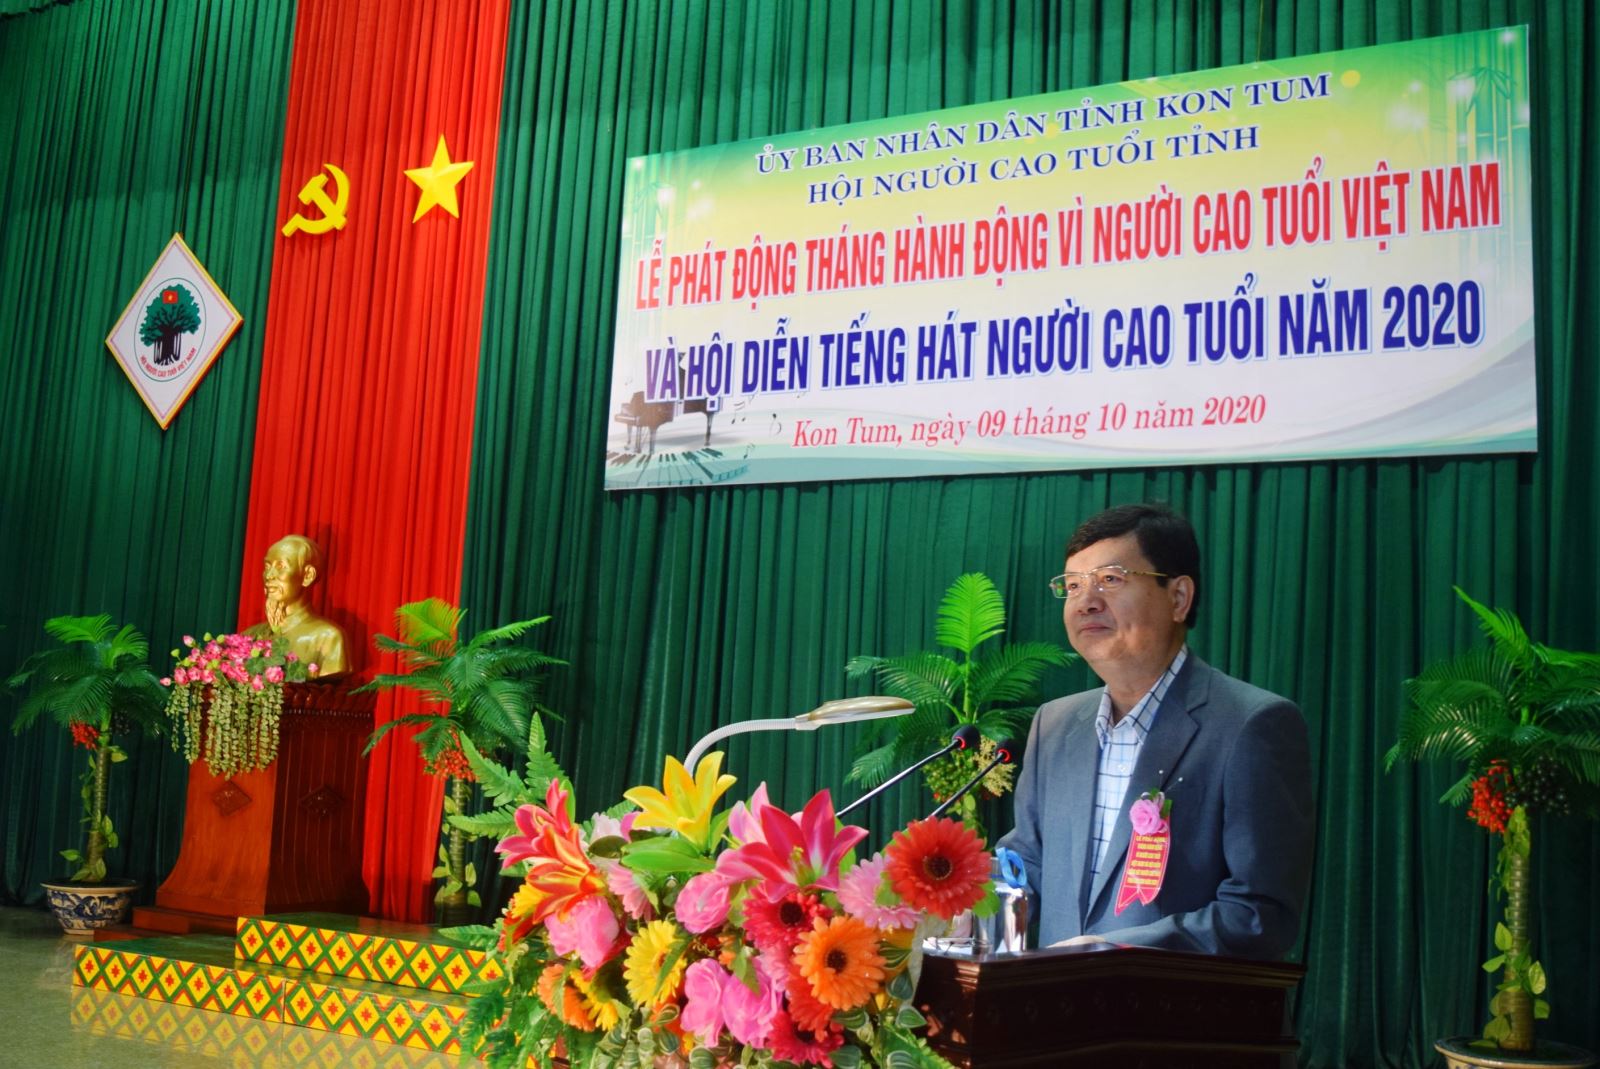 Tổ chức tốt Hội nghị biểu dương điển hình tiên tiến người cao tuổi trong phong trào toàn dân bảo vệ an ninh Tổ quốc giai đoạn 2016-2021 trên địa bàn tỉnh Kon Tum